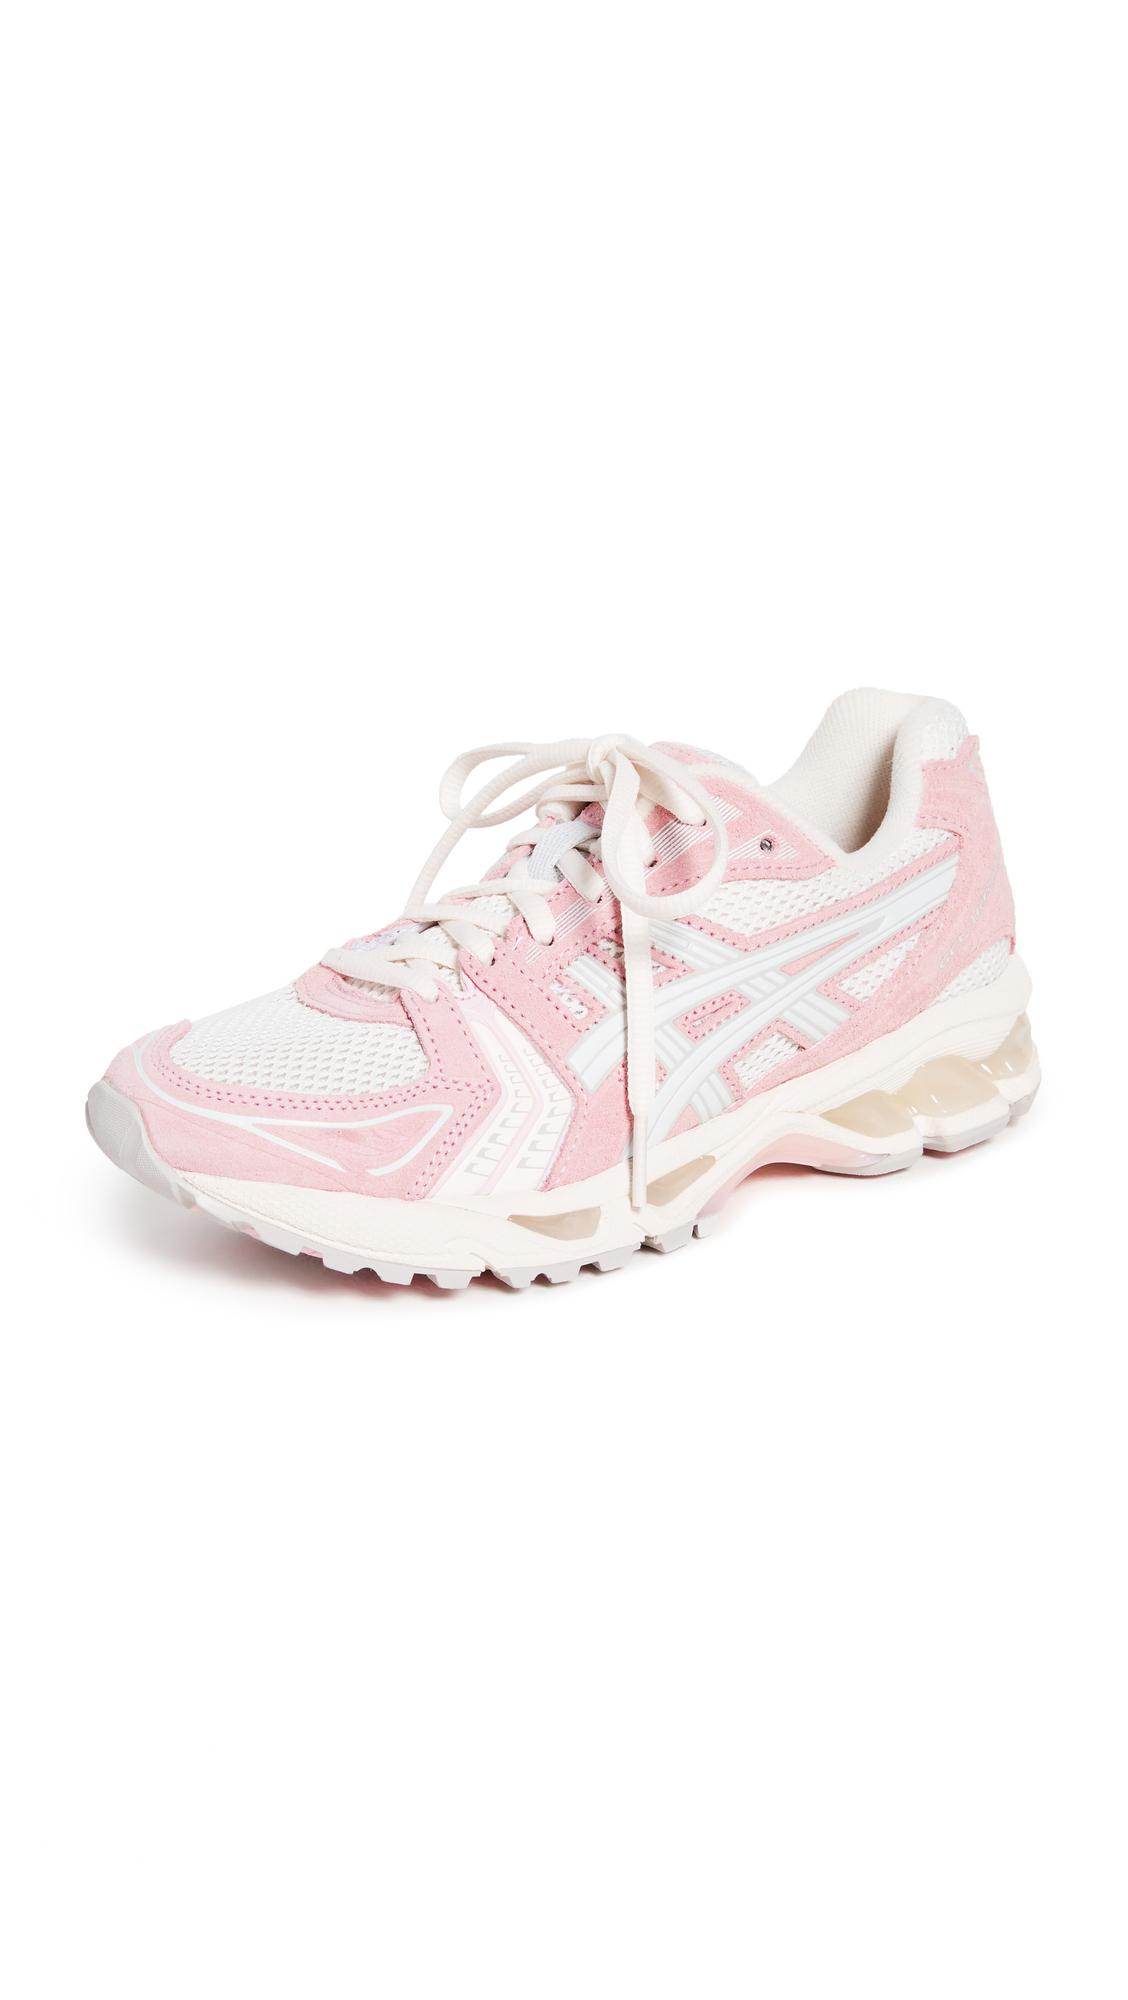 Asics Gel Kayano 14 Sneakers in Pink | Lyst